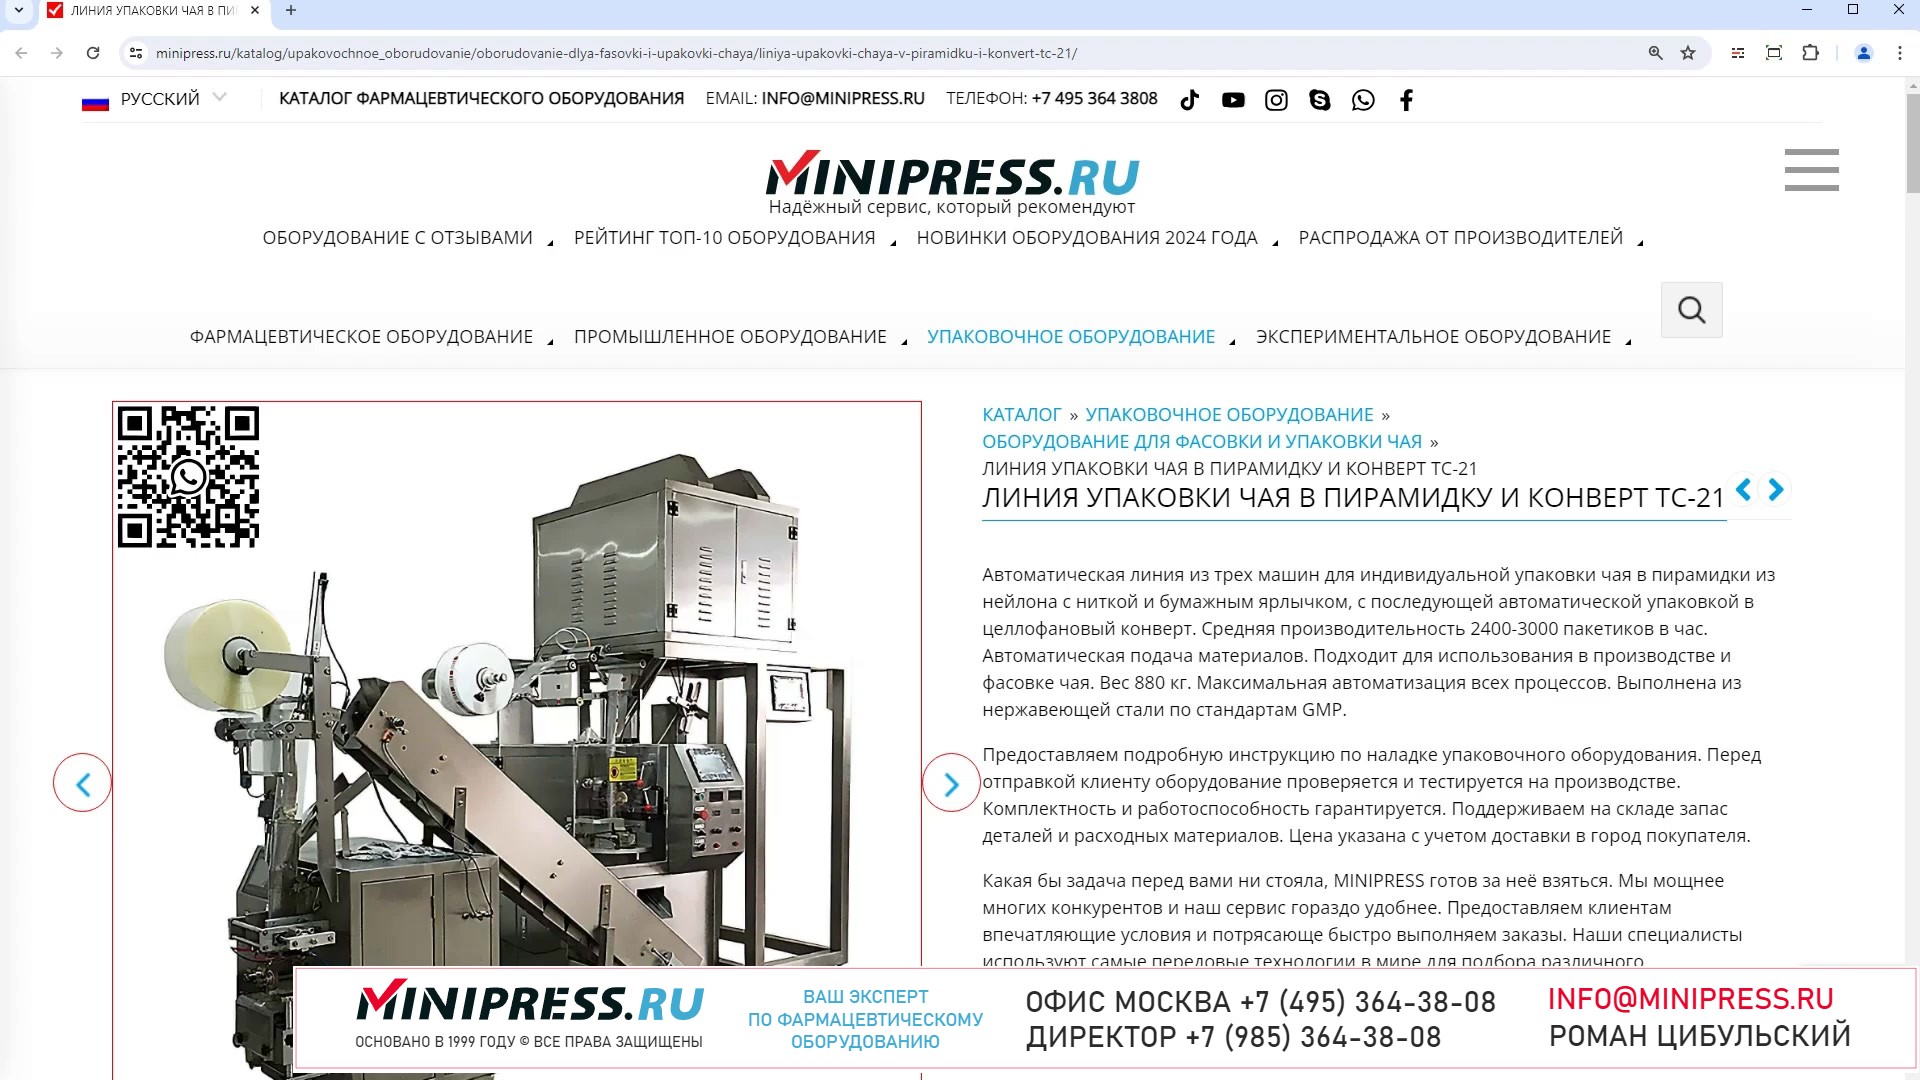 Minipress.ru Линия упаковки чая в пирамидку и конверт TC-21